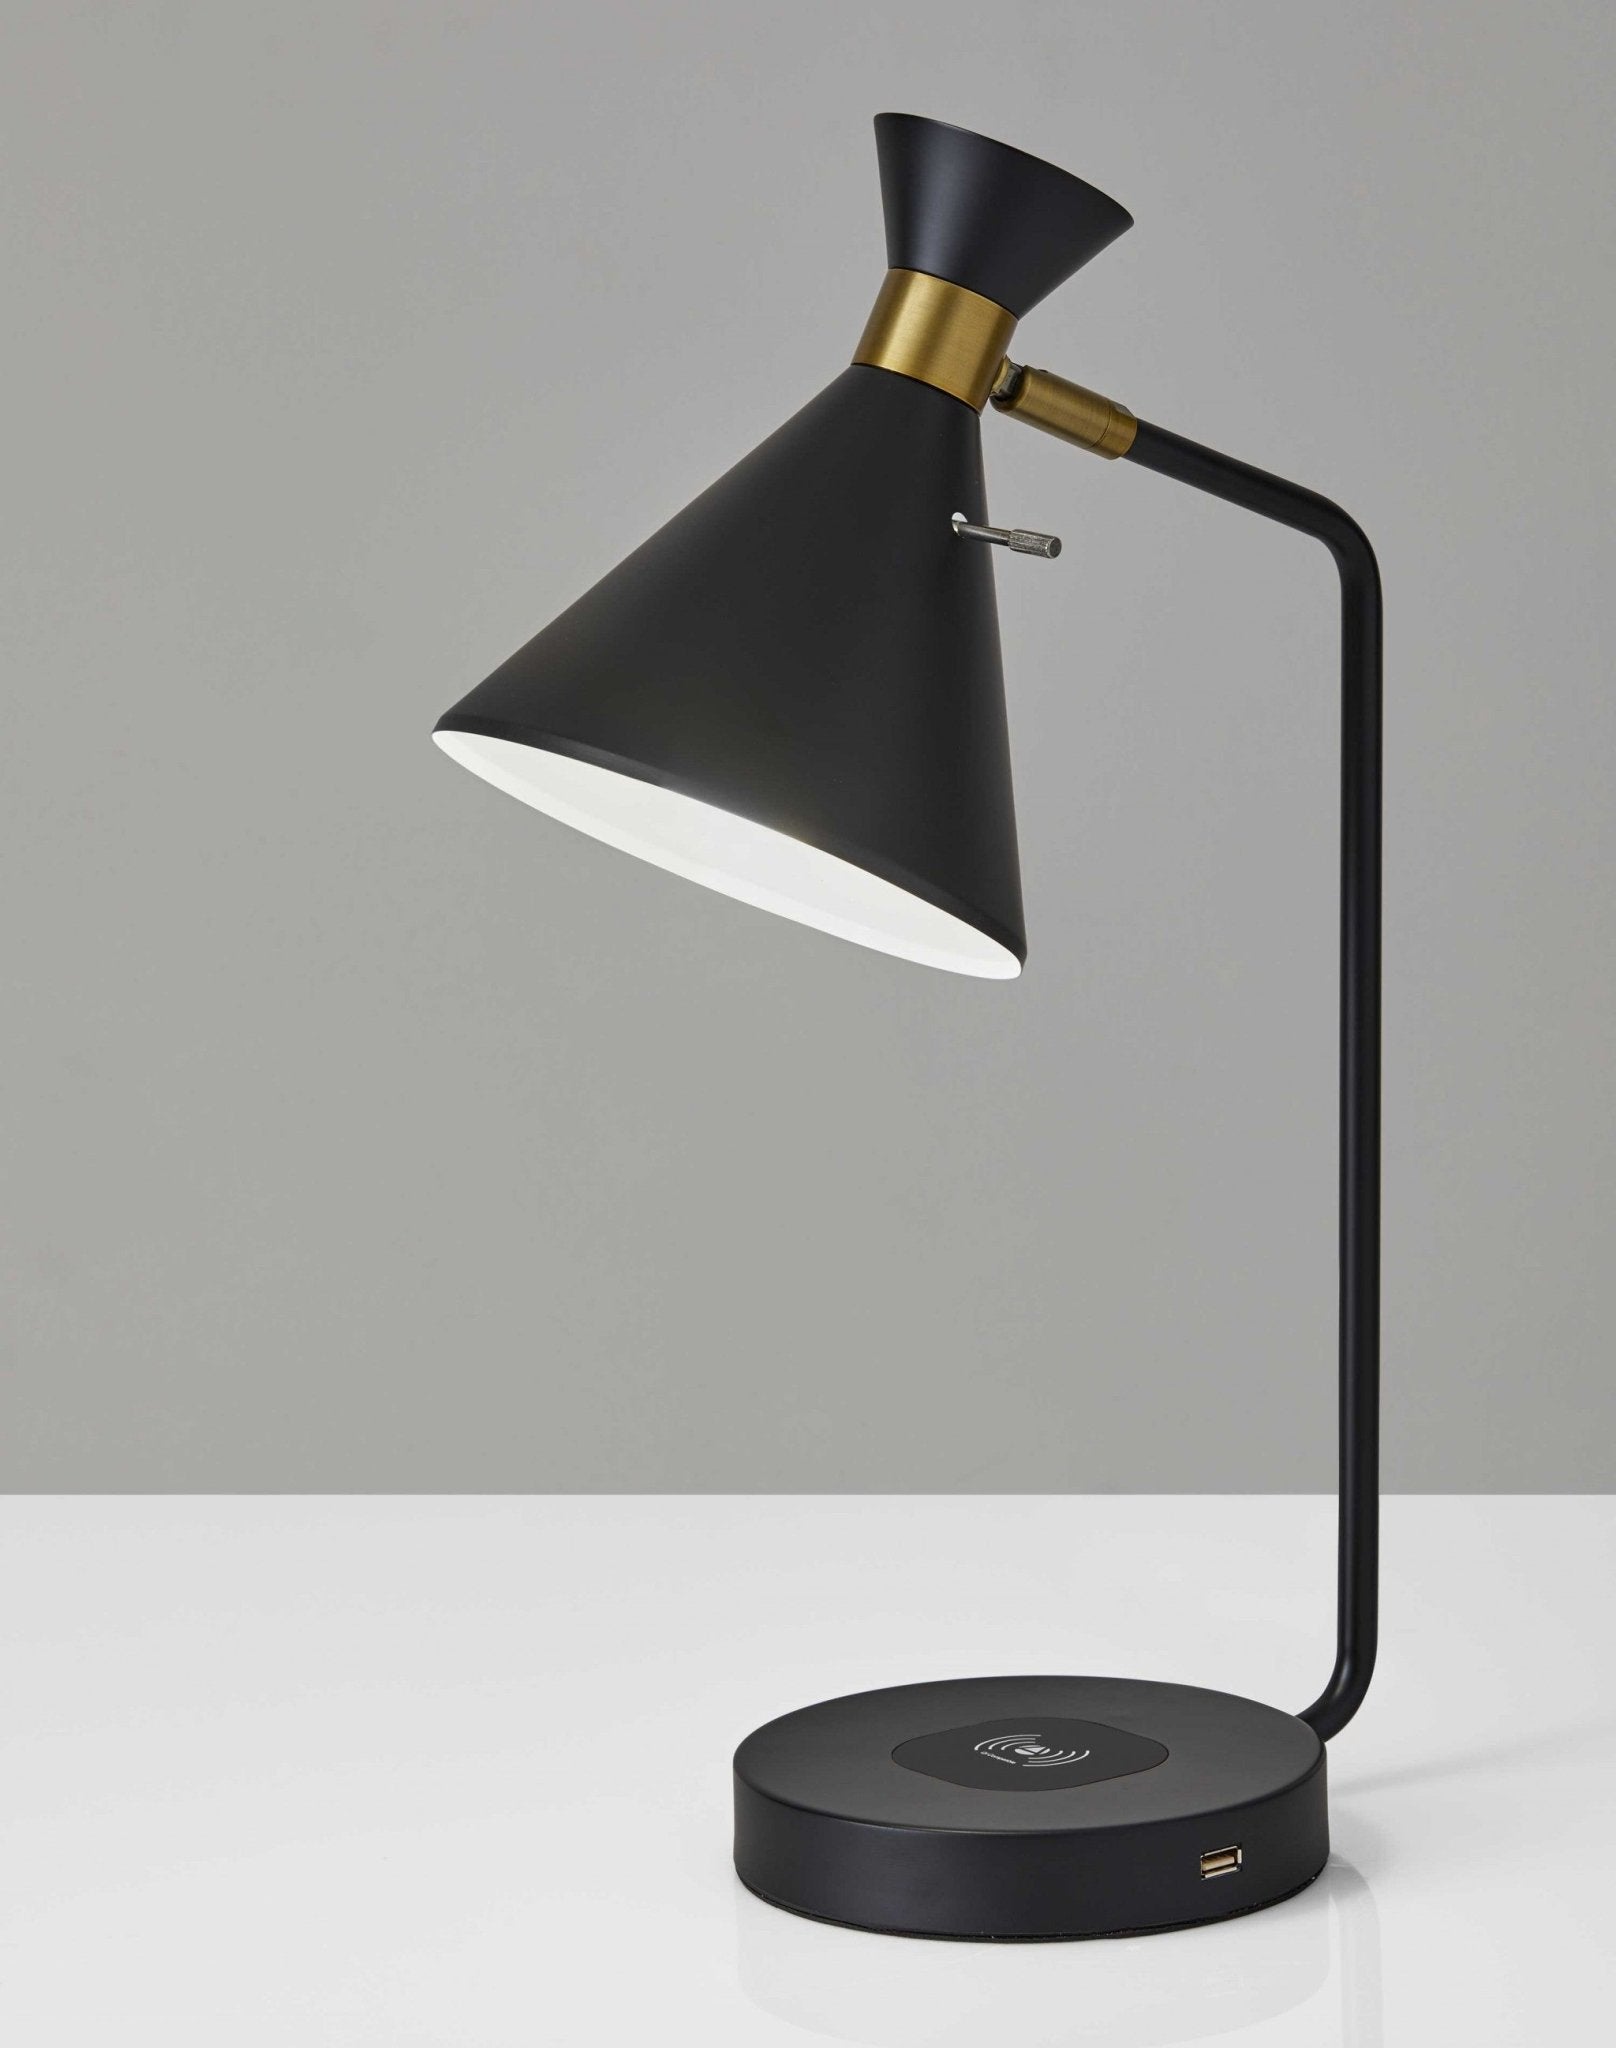 Asymmetrical-Diabolo-Black-Metal-Desk-Lamp-Table-Lamps